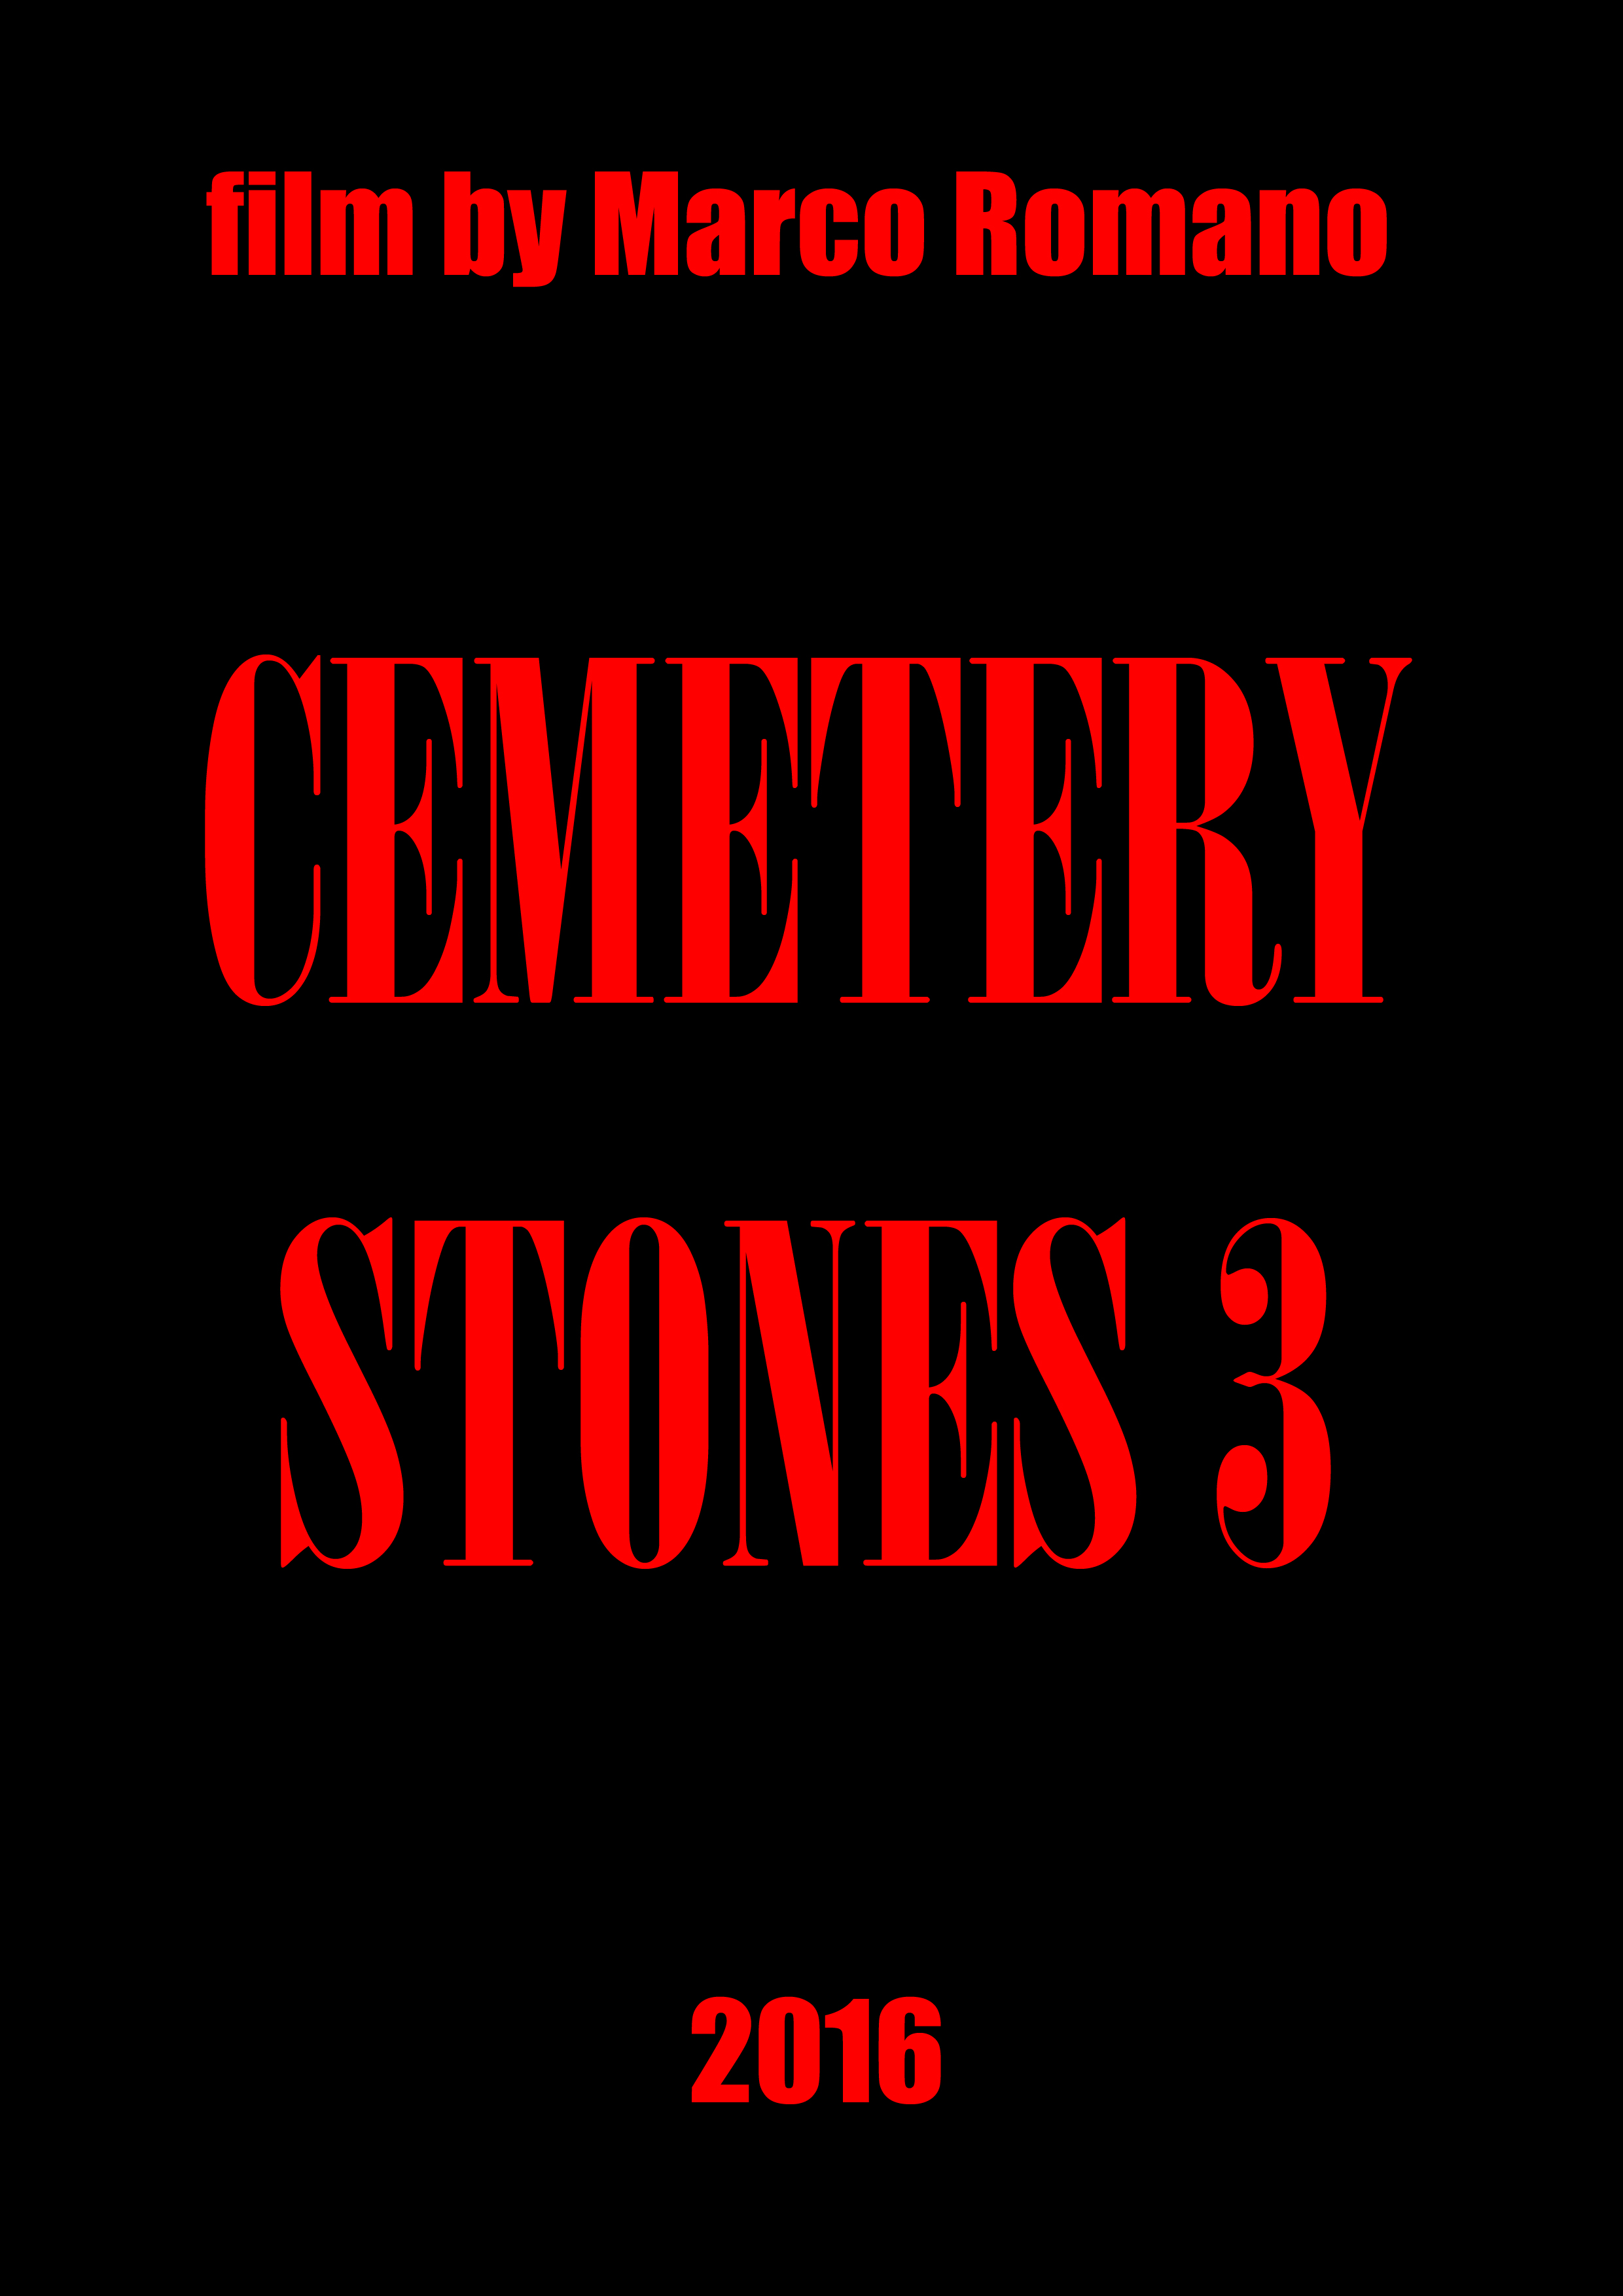 Cemetery Stones 3 (2016)